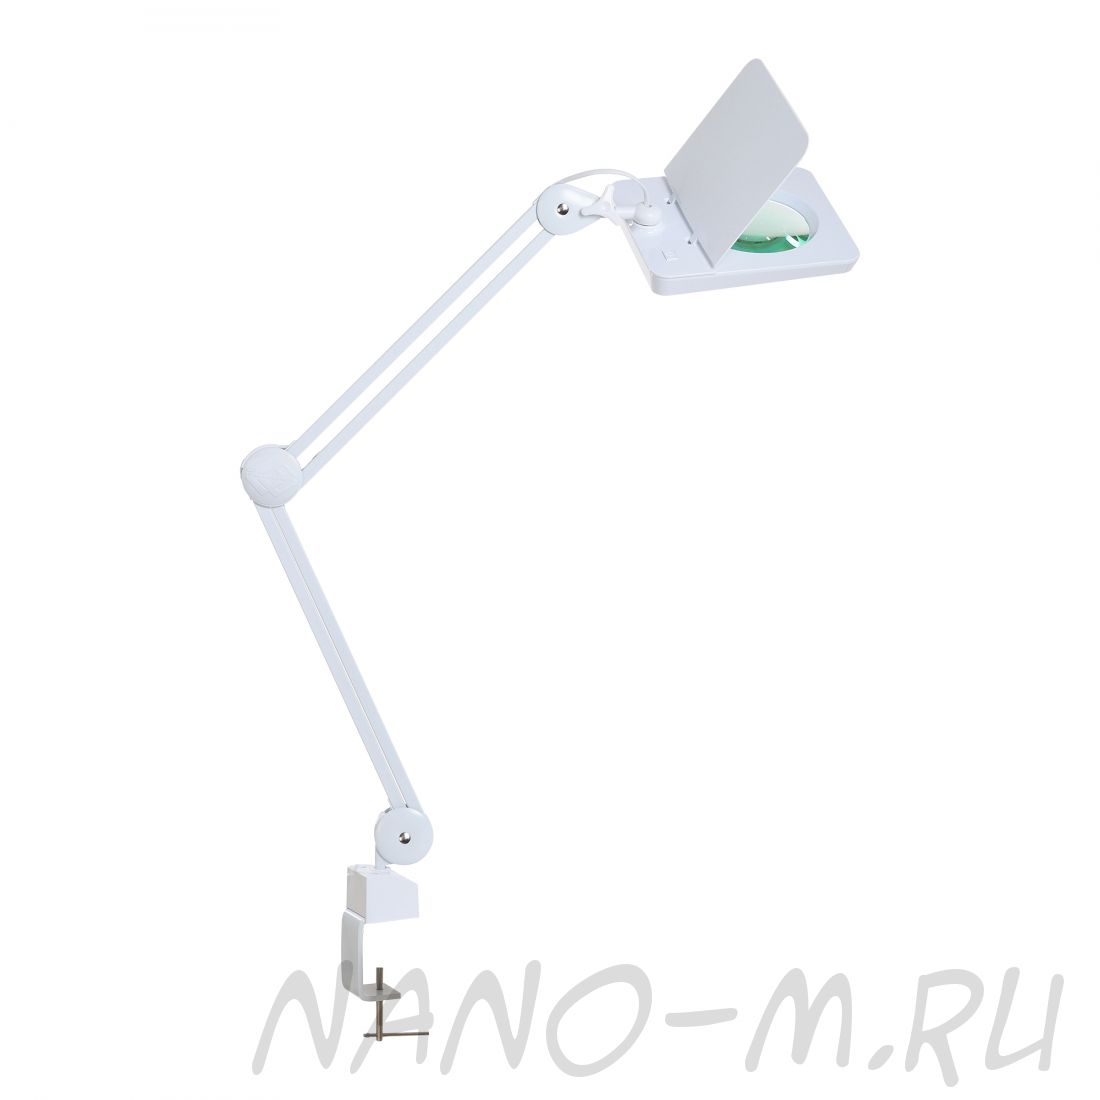 Лампа бестеневая с РУ (лампа-лупа) Med-Mos 9002LED (9008LED-D-127)